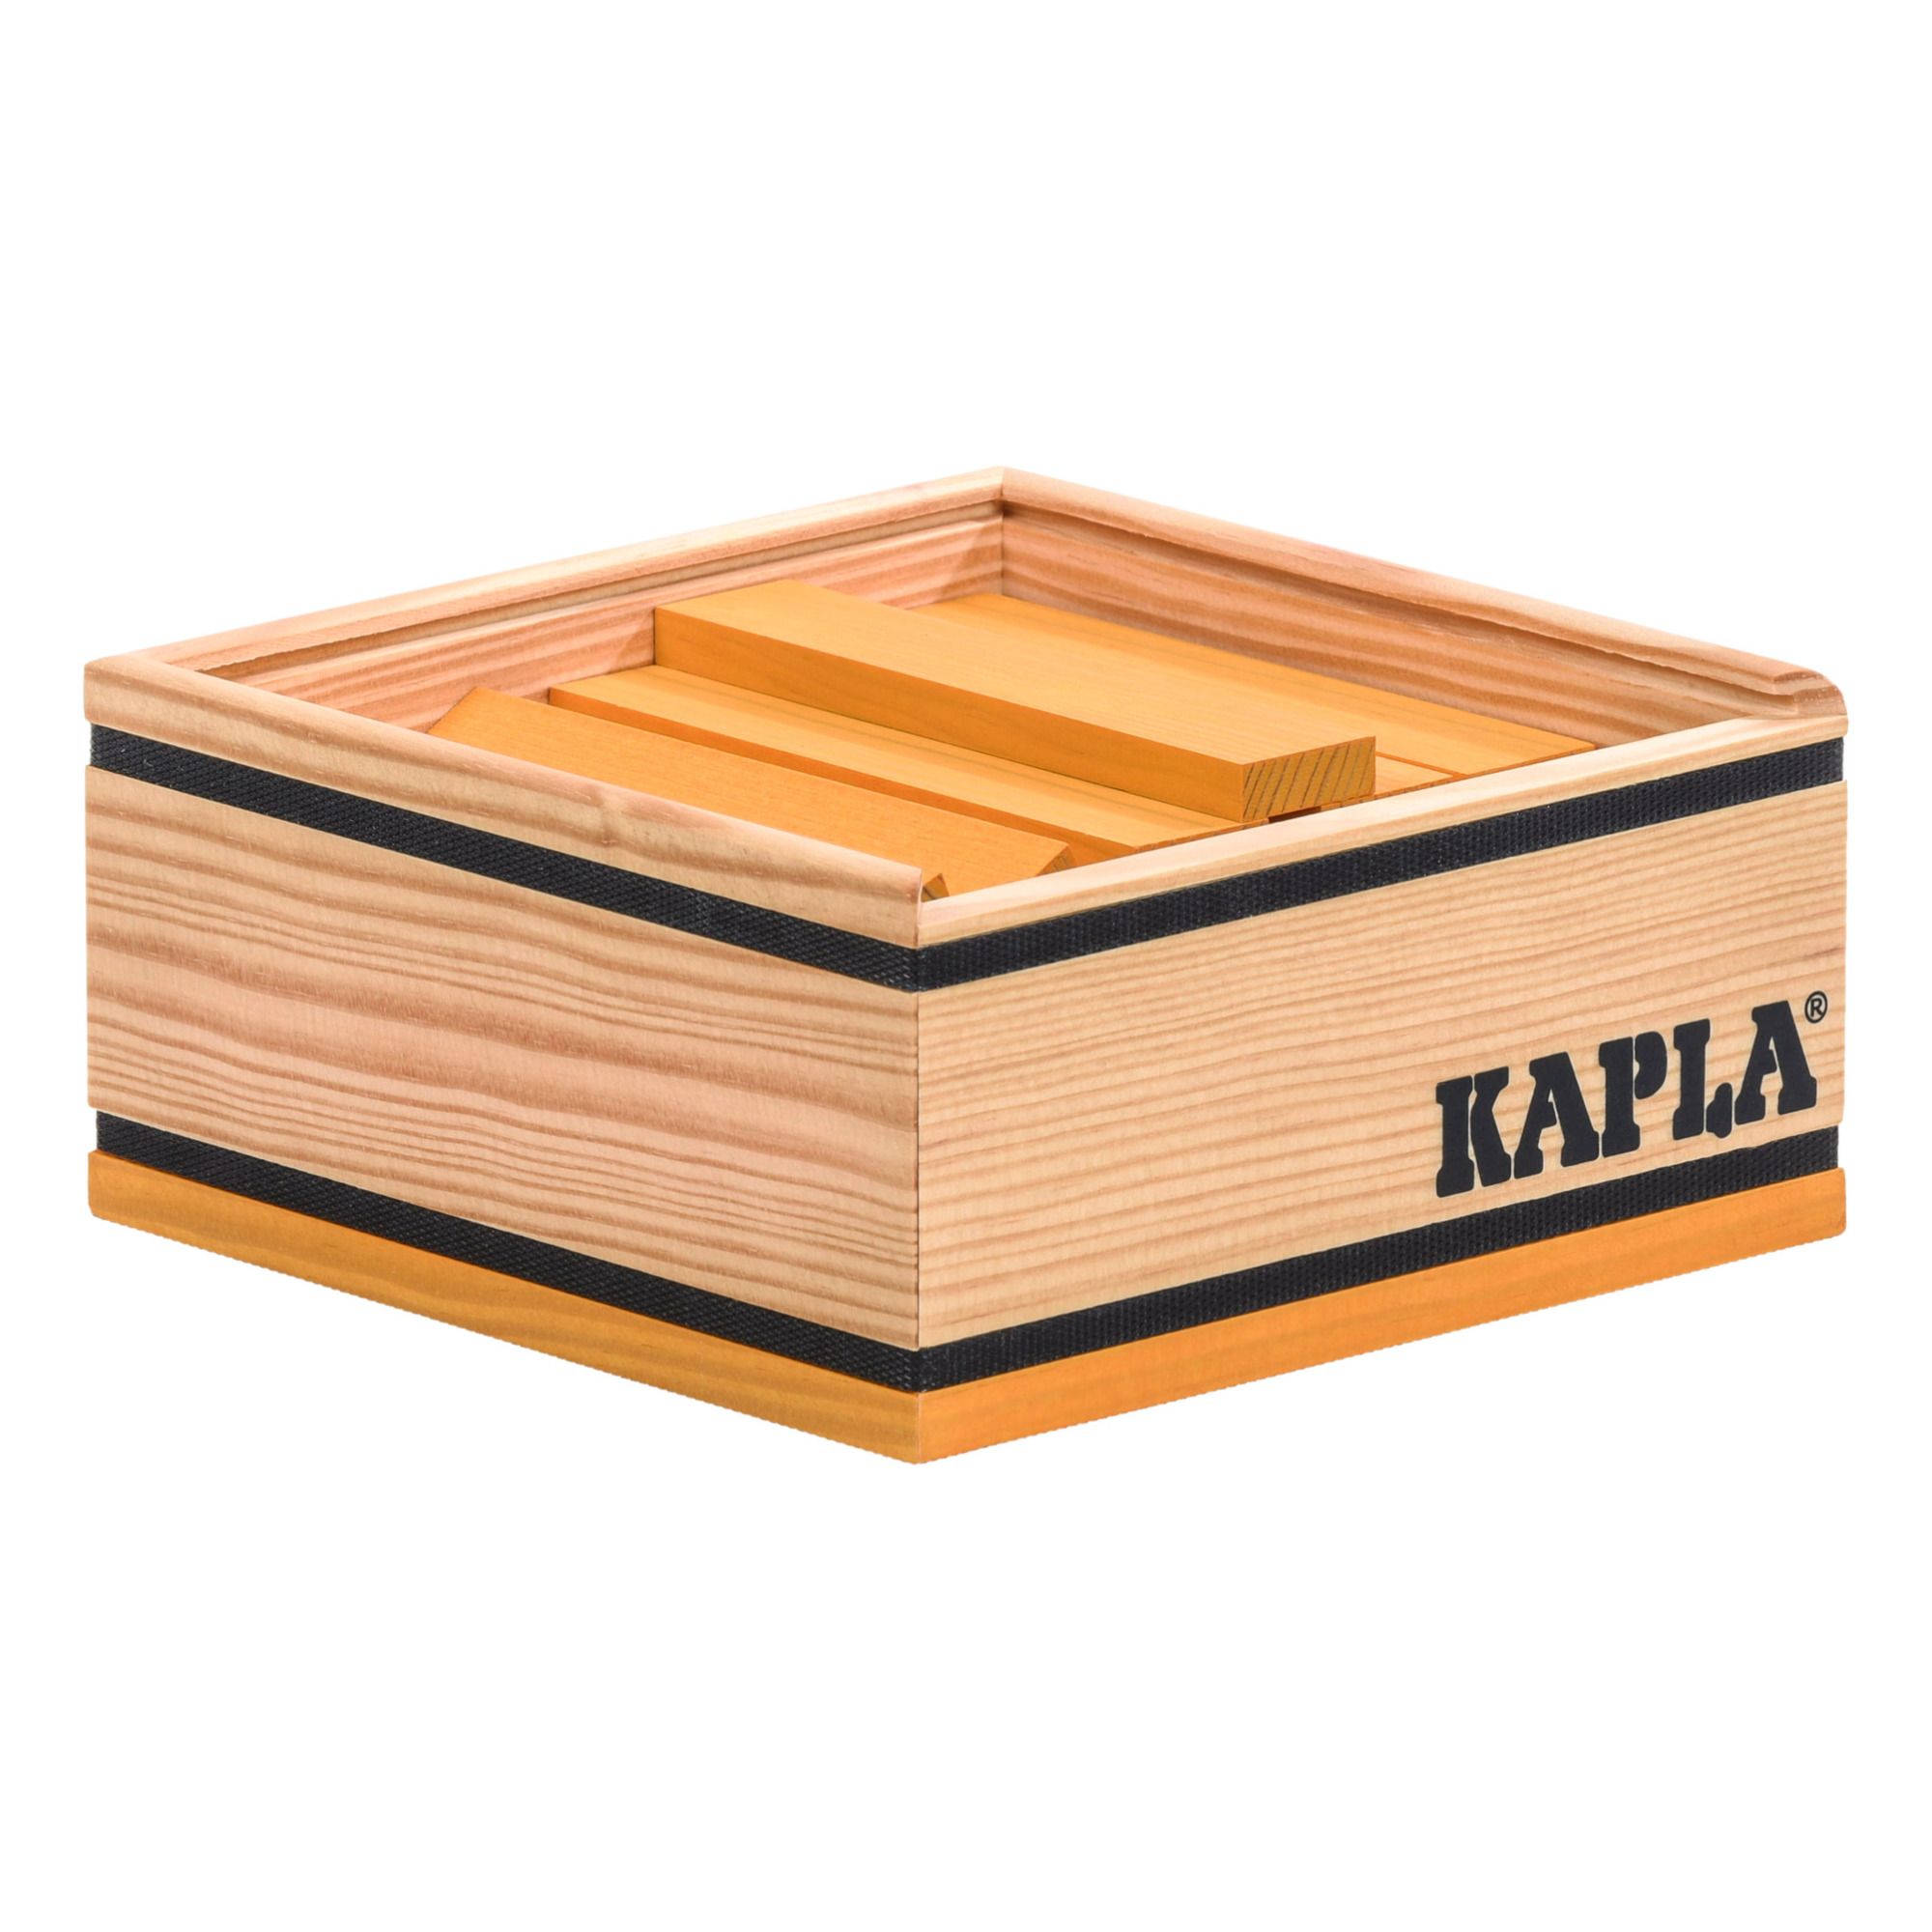 Kapla - Building Block Set - 40 Pieces - Yellow